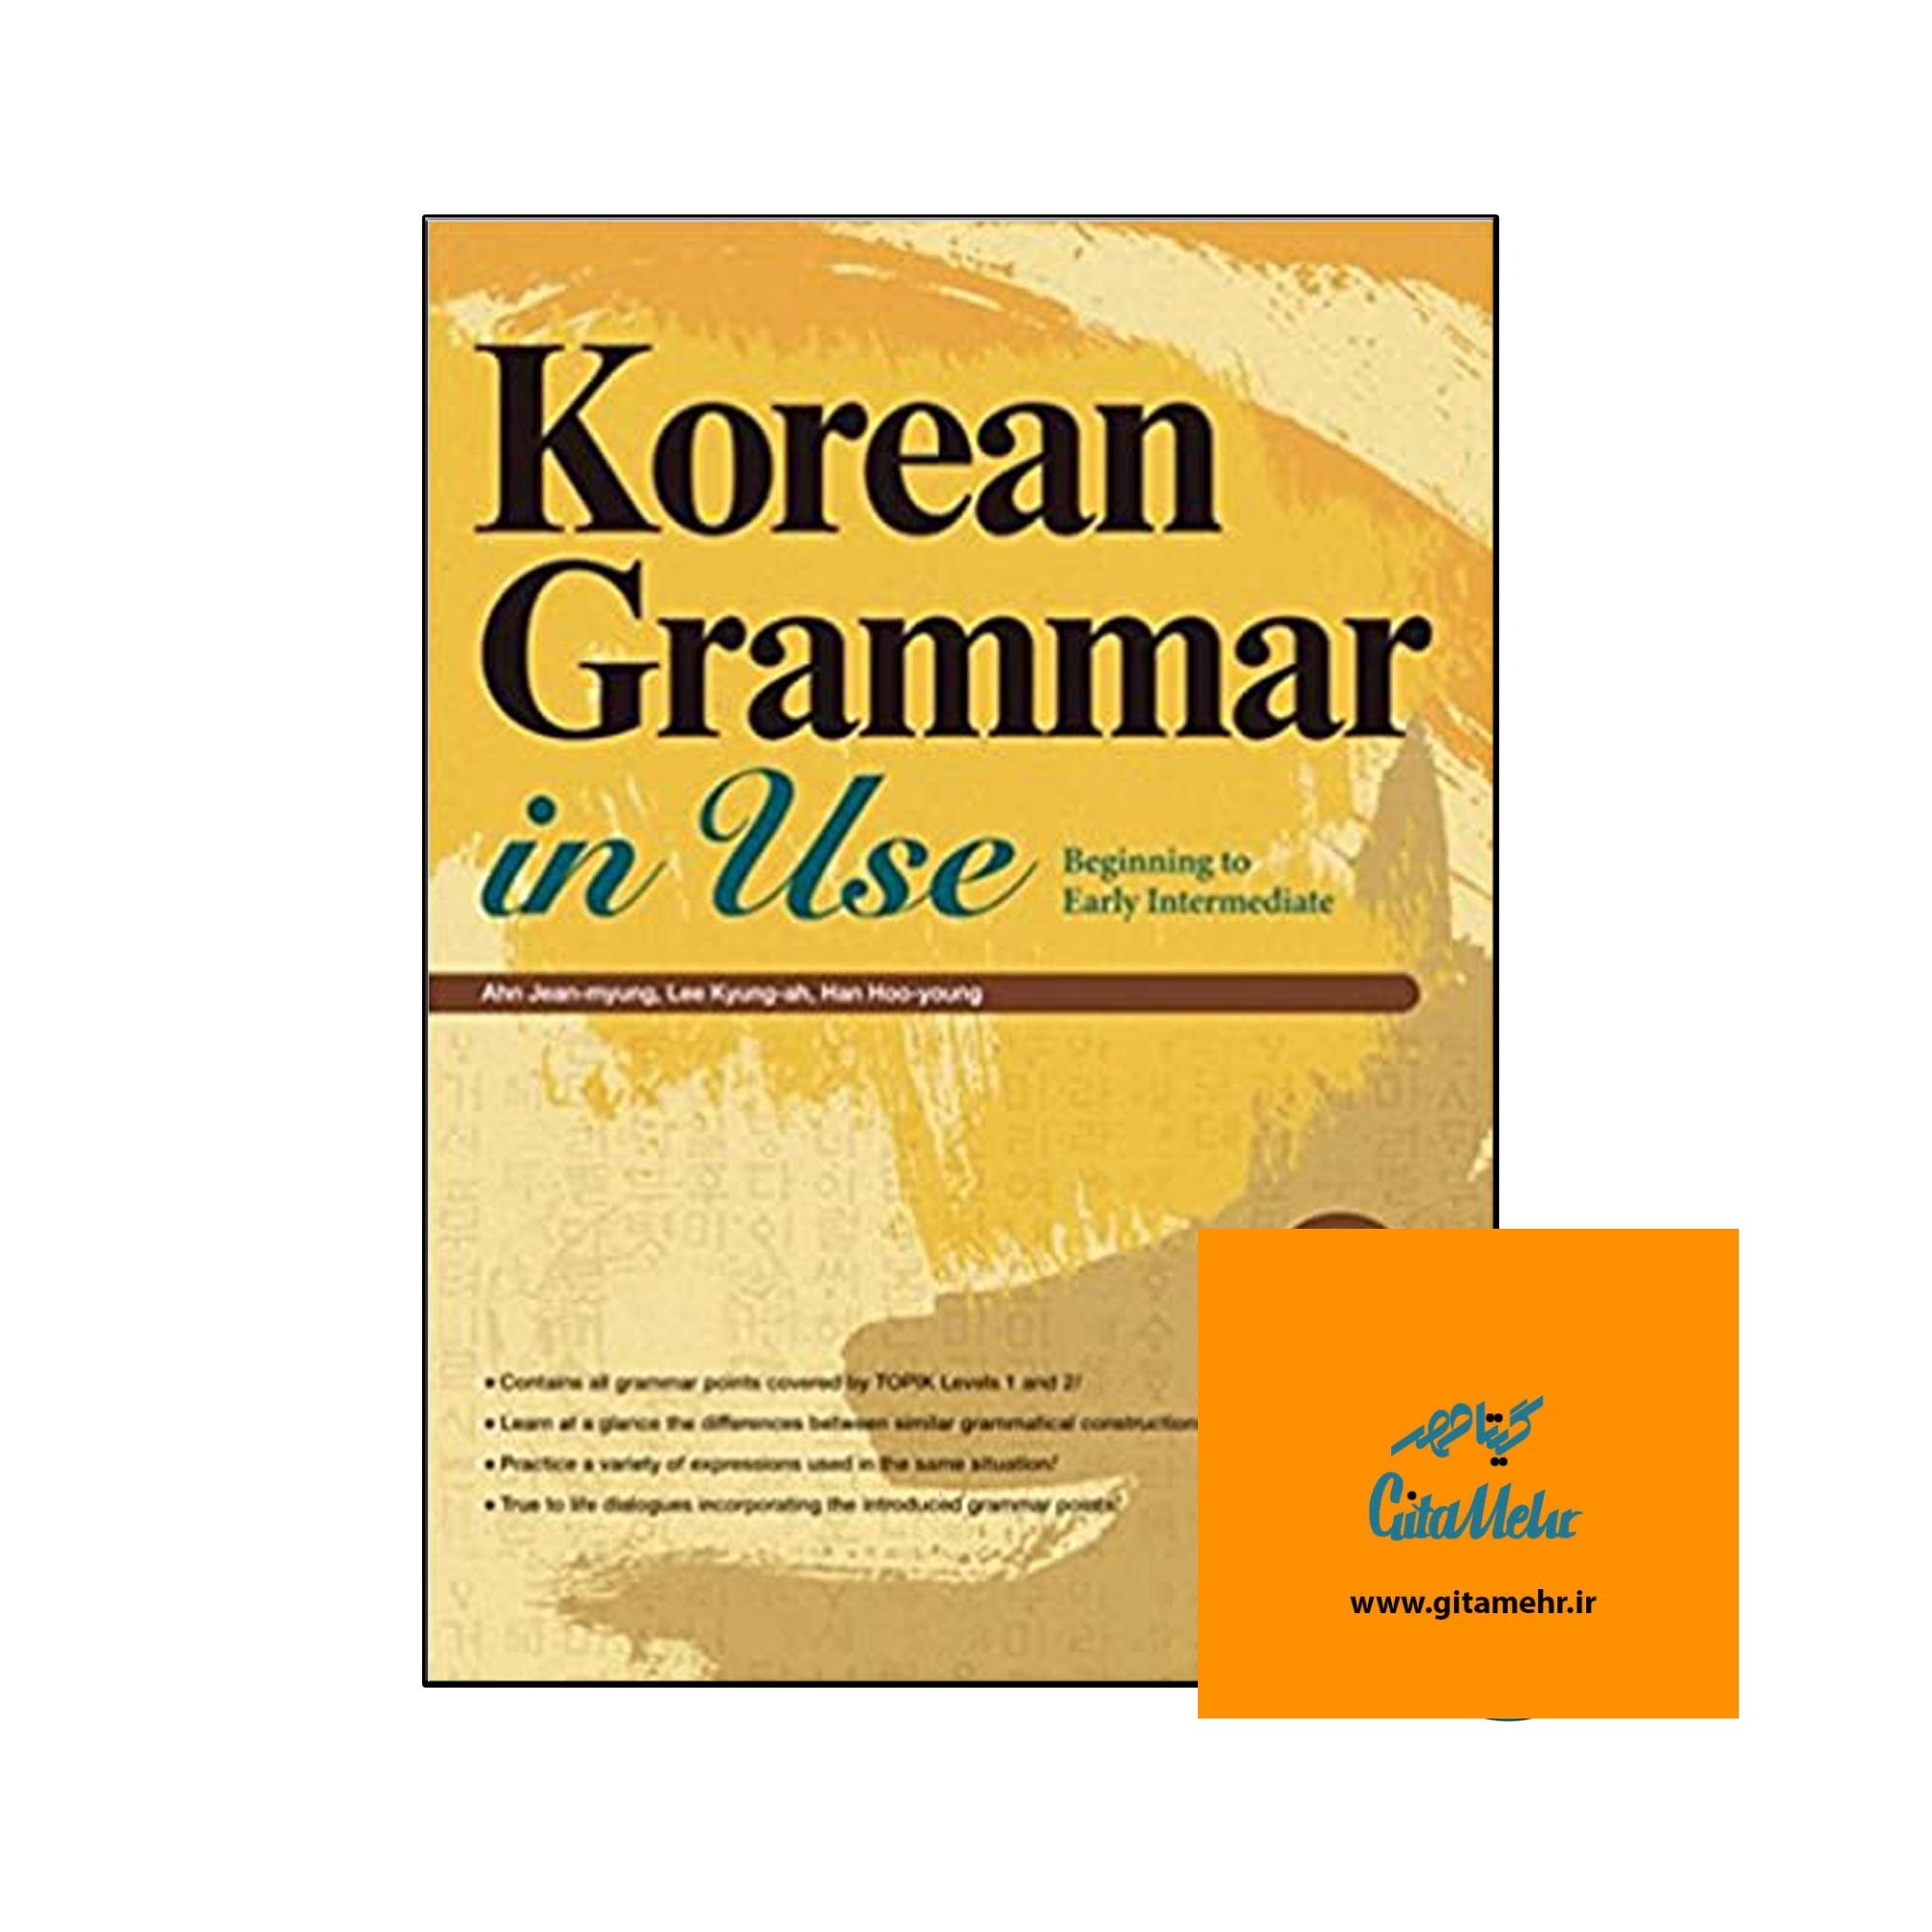 korean grammar in use beginning to early intermediate da86d8a7d9be d8b1d986daafdb8c 65f088afa2b56